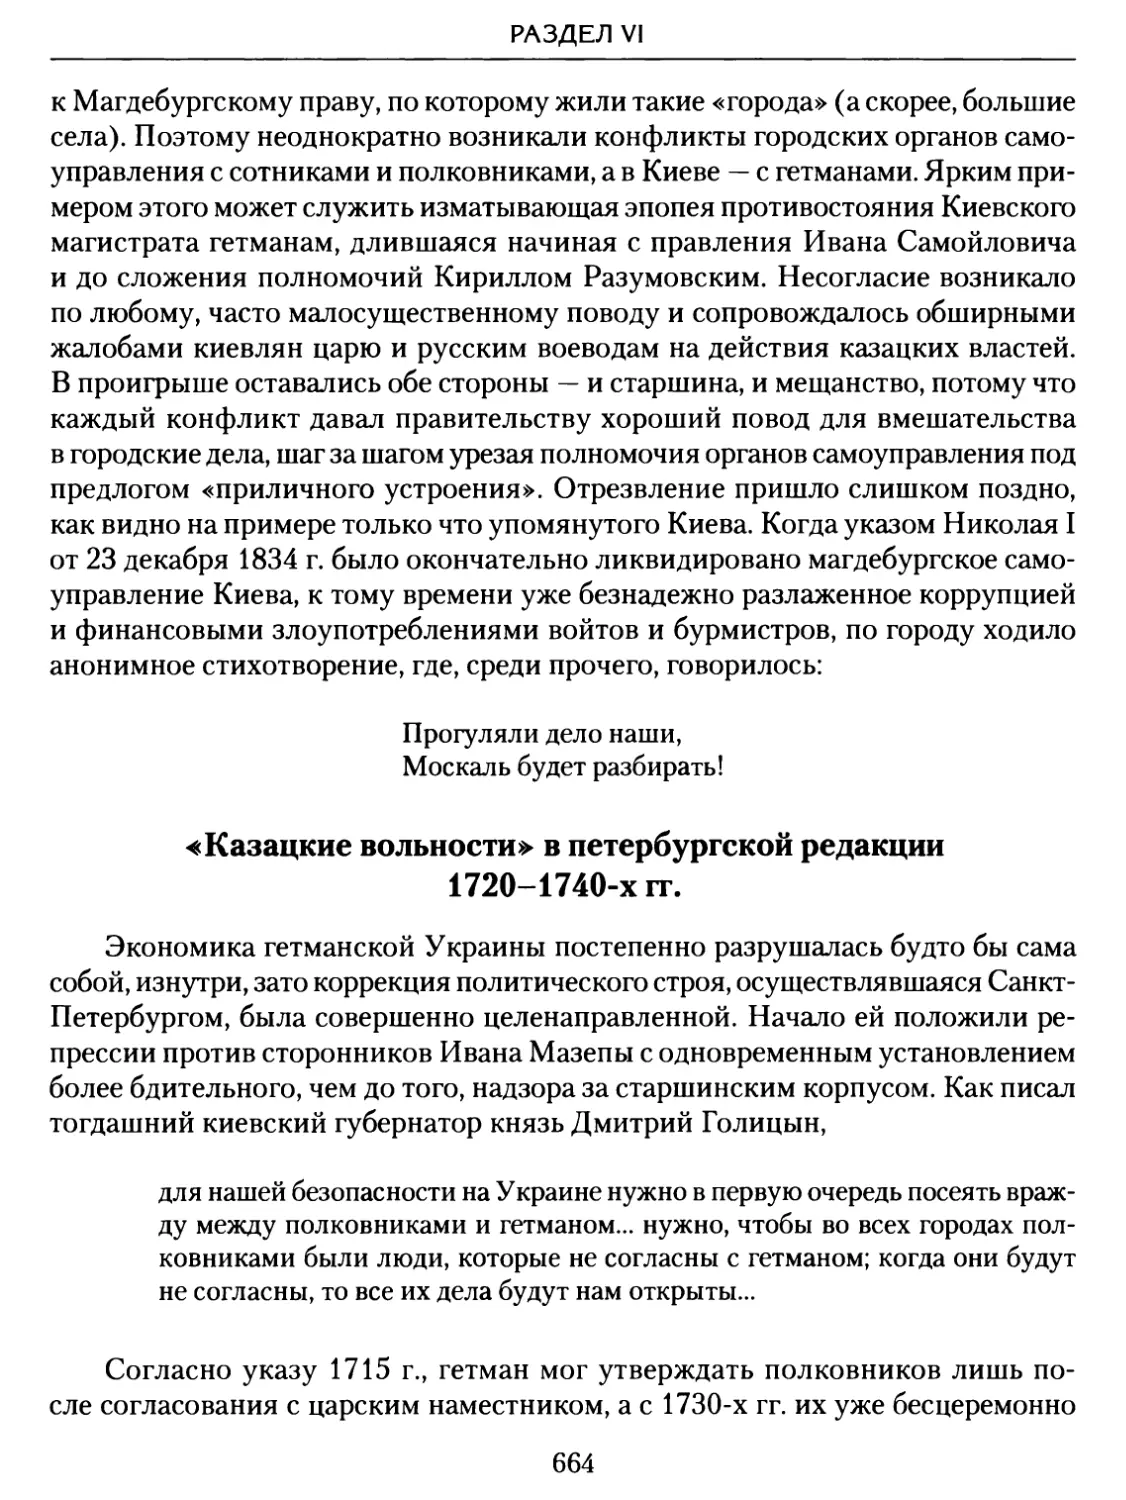 «Казацкие вольности» в петербургской редакции 1720–1740-х гг.